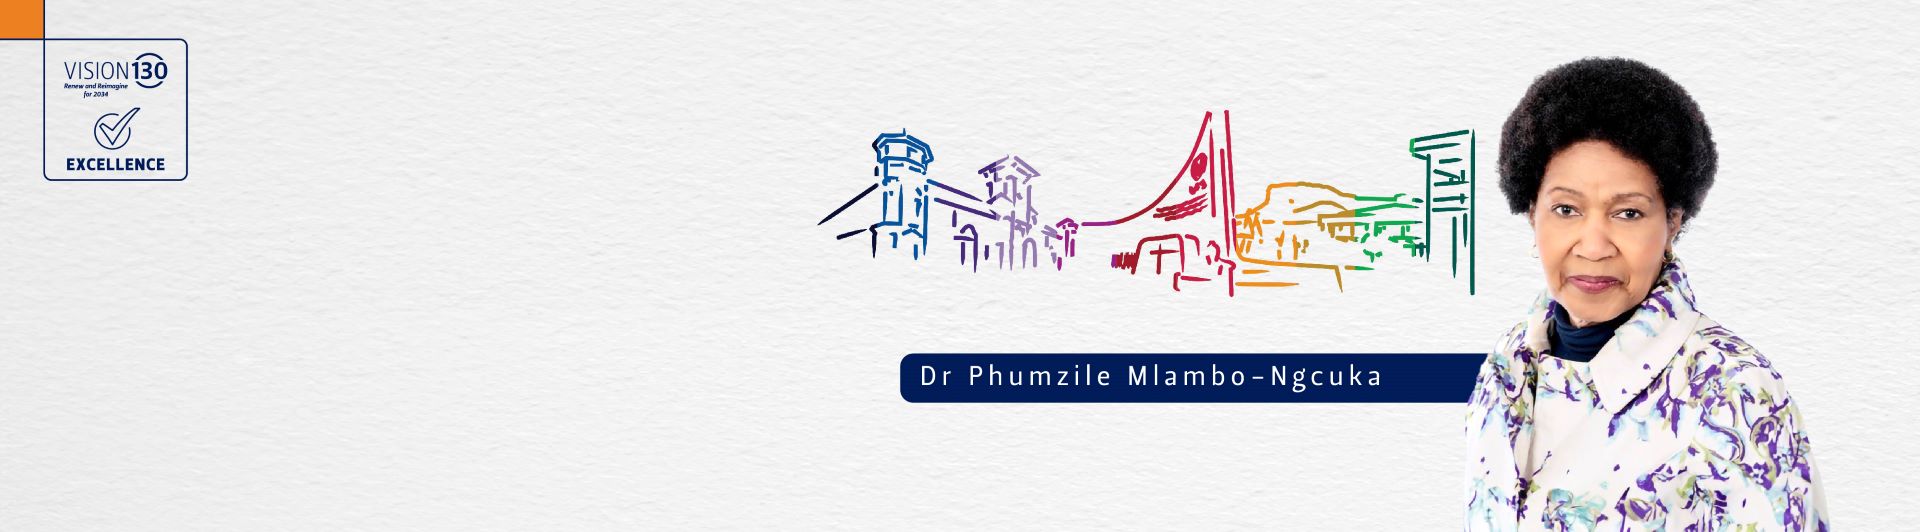 Dr Phumzile Mlambo-Ngcuka